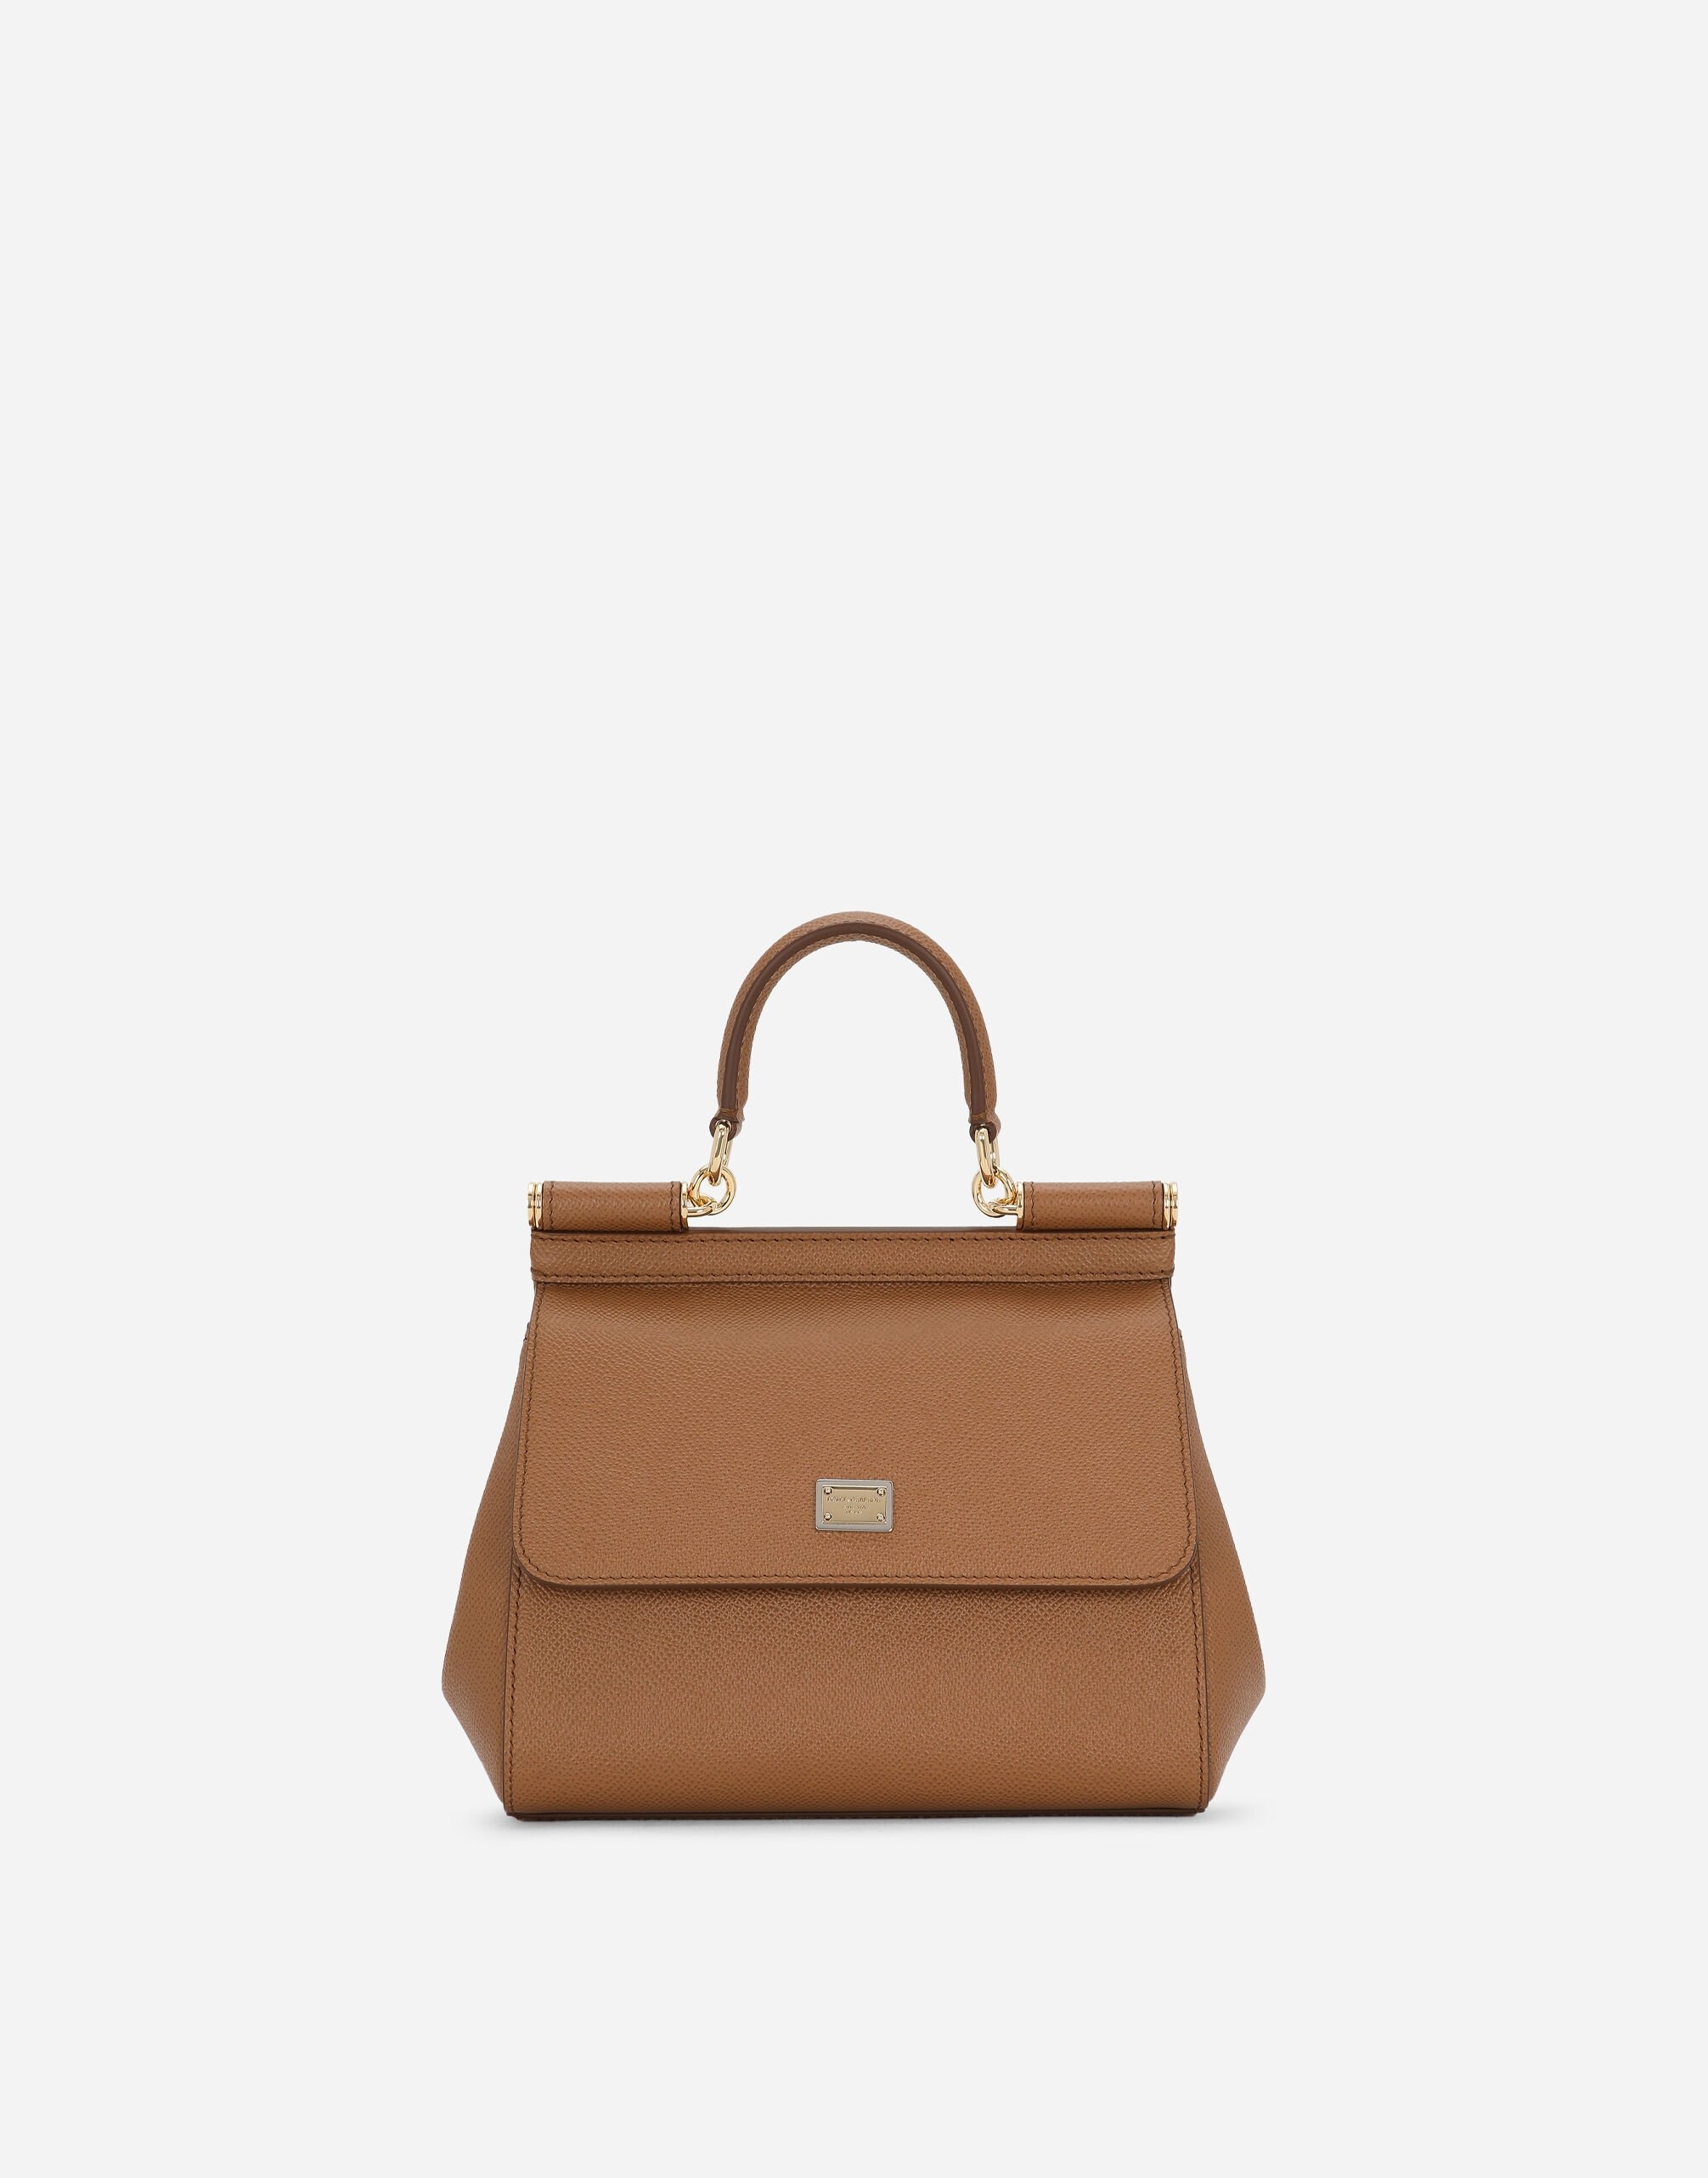 Medium Sicily handbag - 1